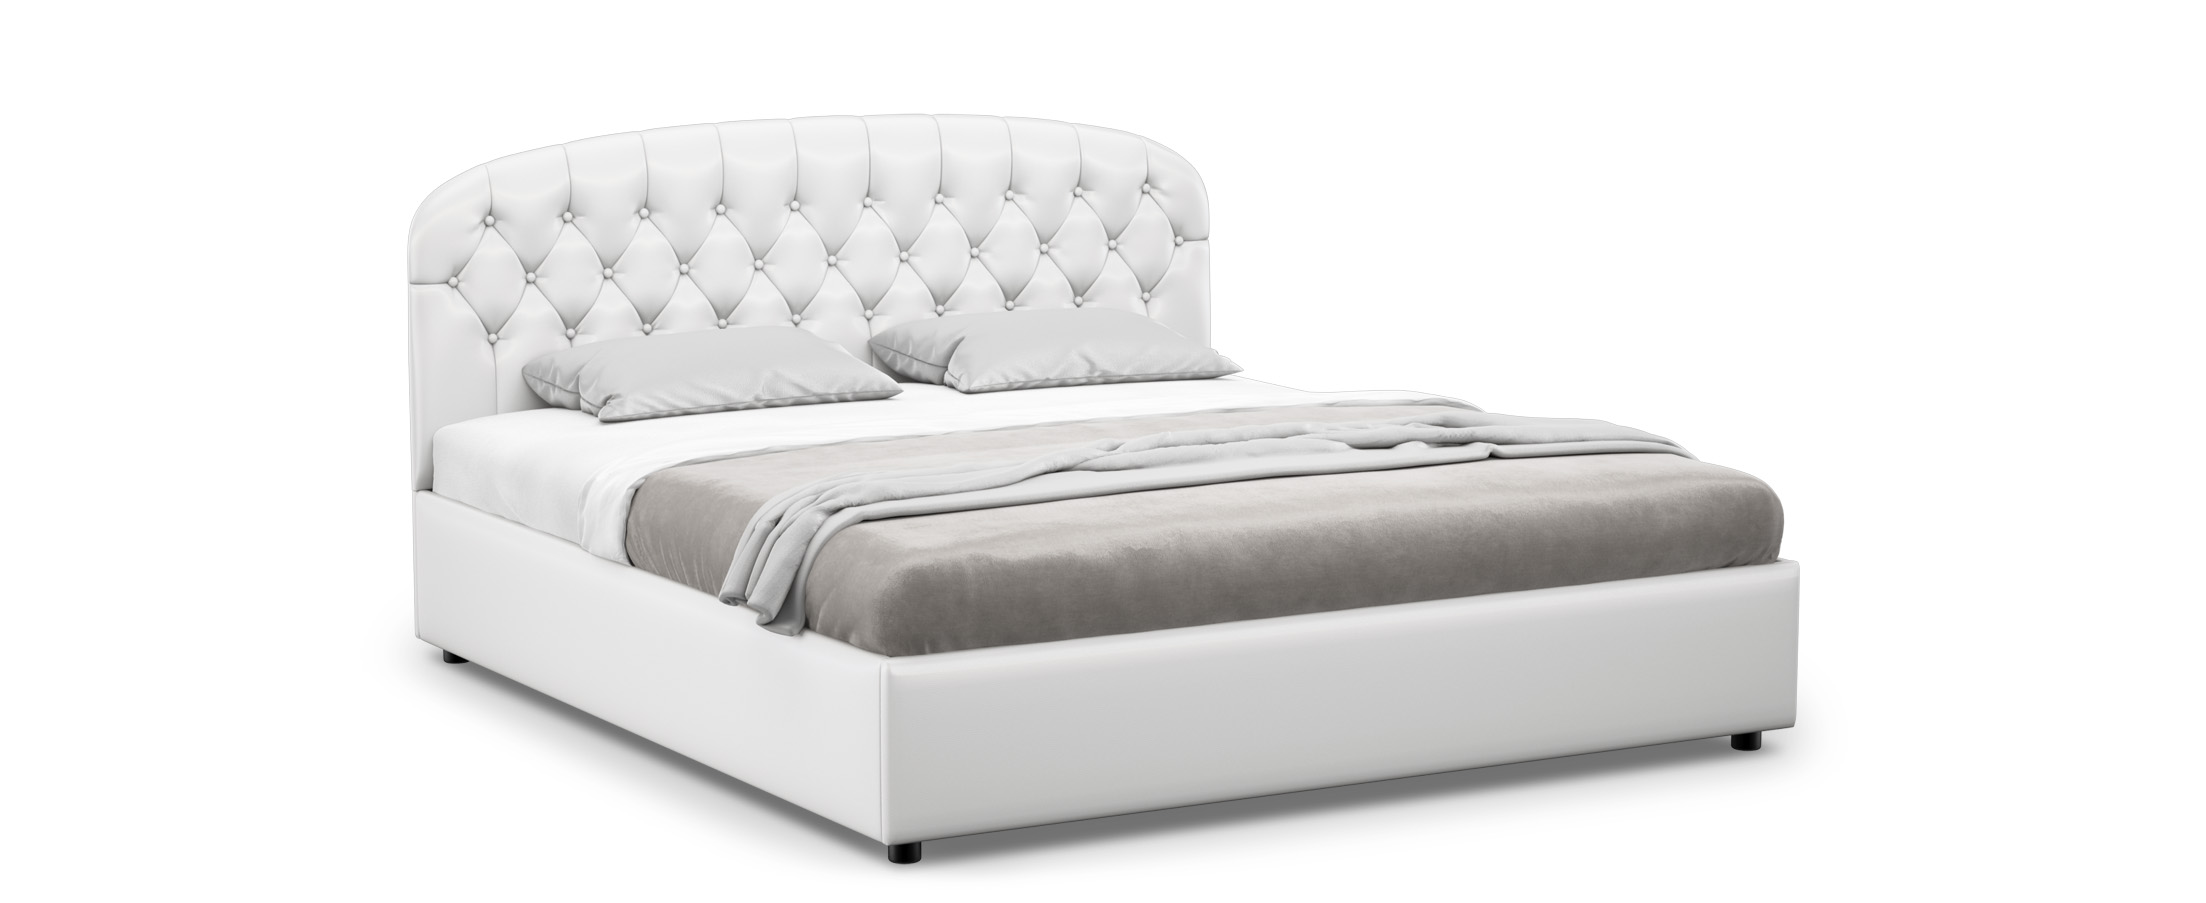 Кровать двуспальная Bianca New 180х200 Модель 1227